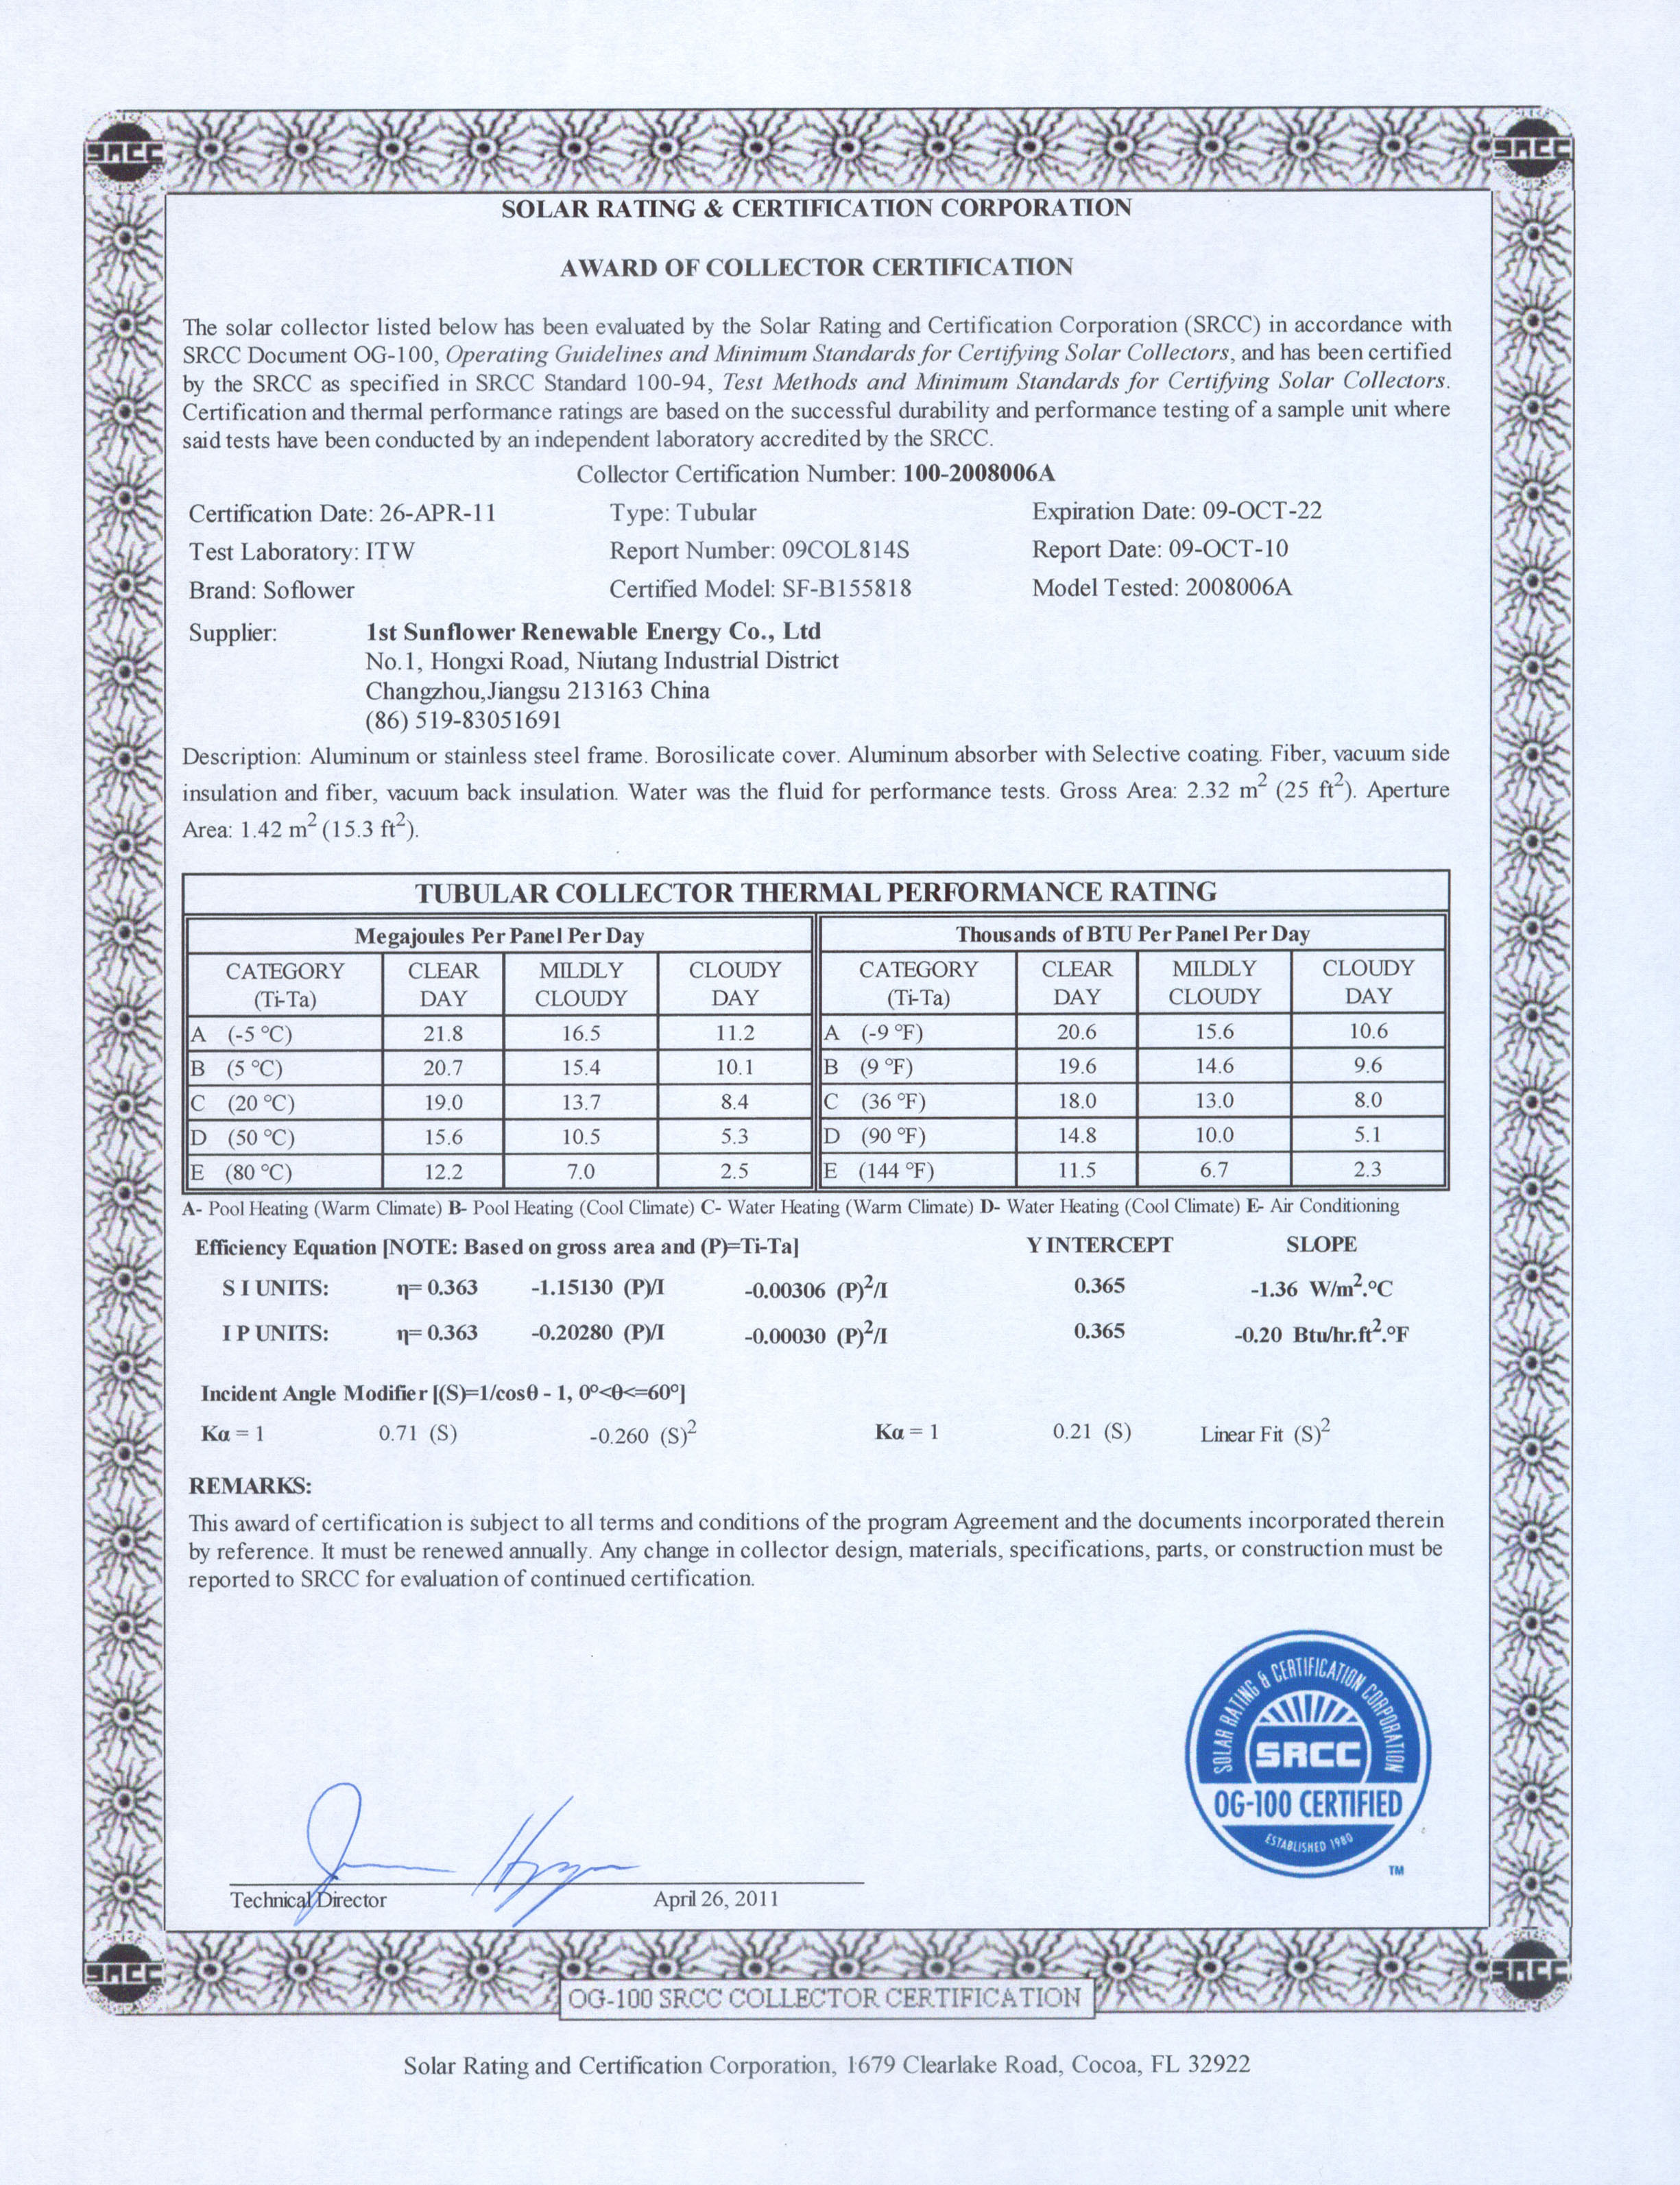 SF-B155818 SRCC certificado de laboratório ITW